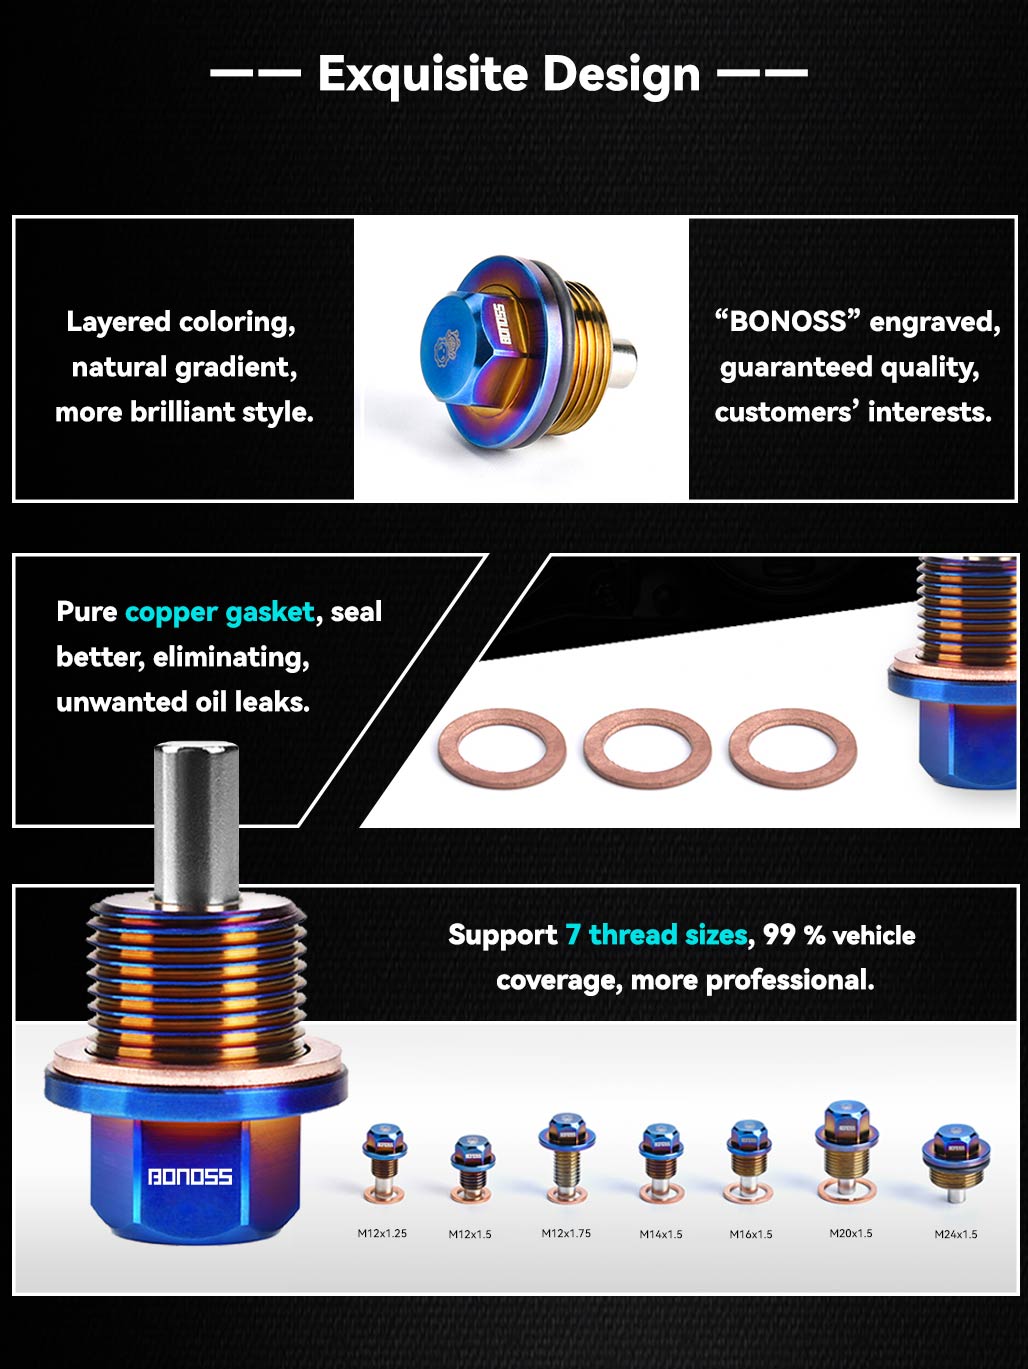 BONOSS Forged Titanium Magnetic Oil Drain Plug Kit M14x1.5 for